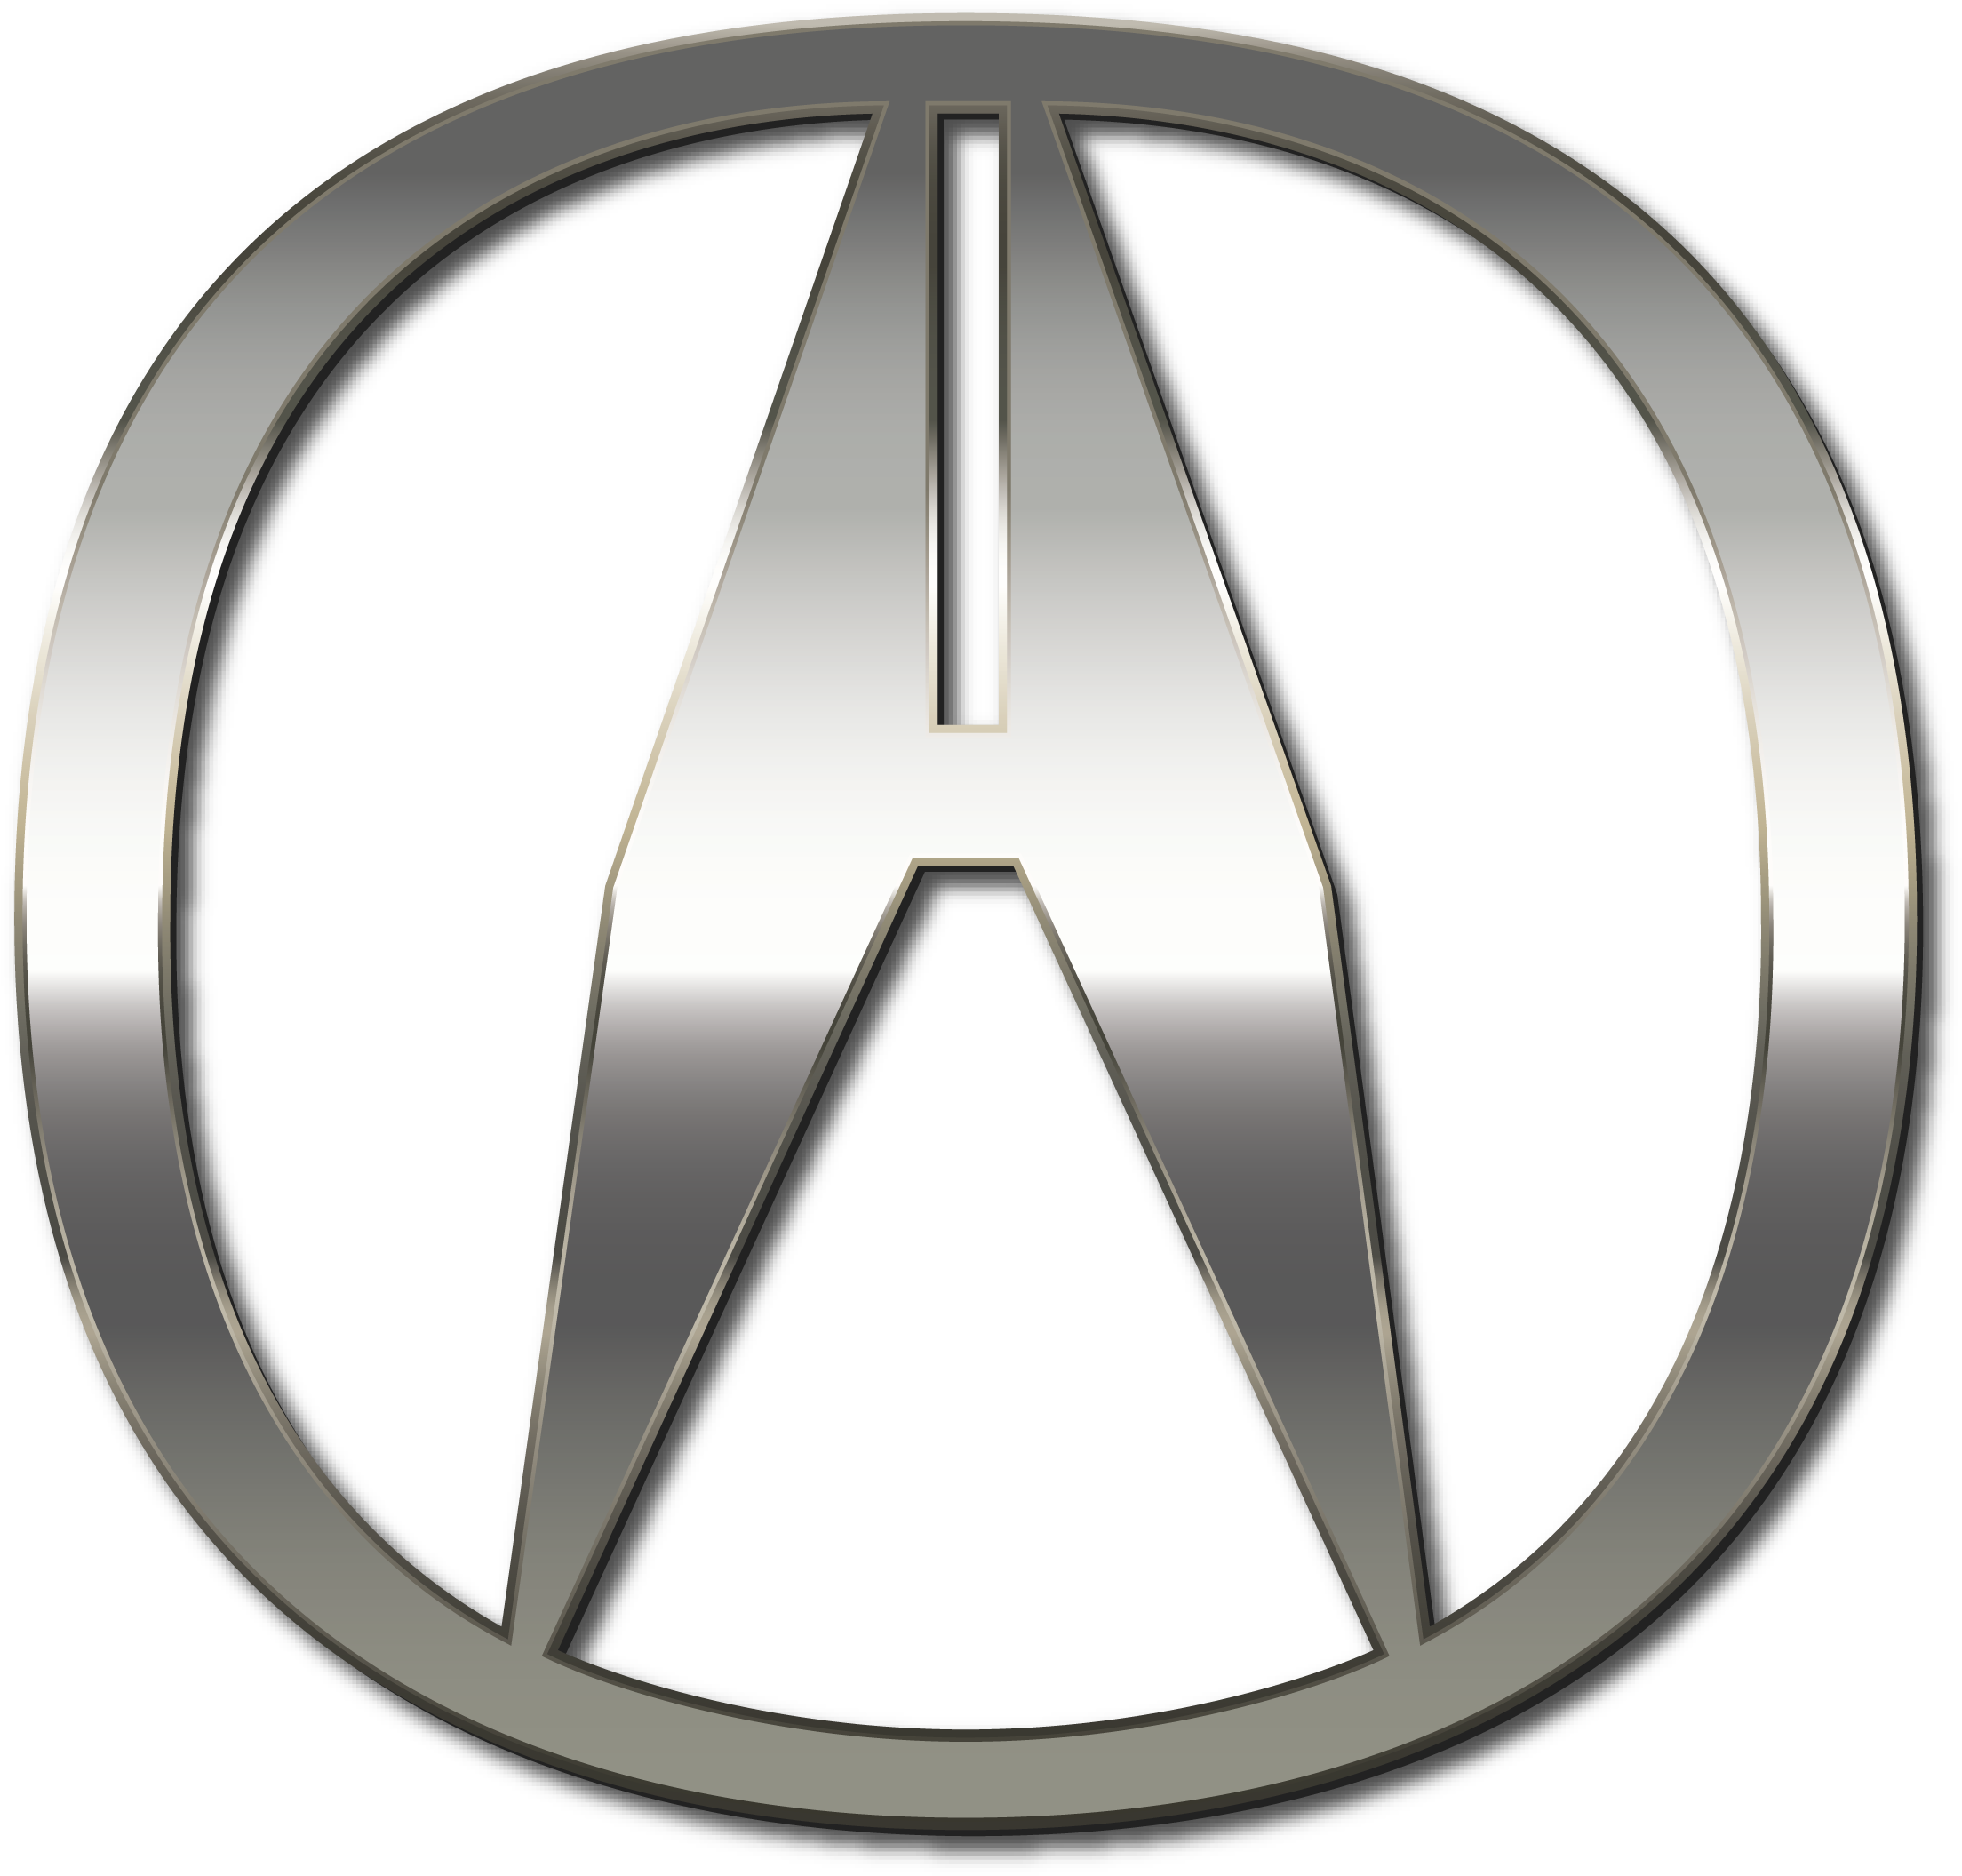 Acura марка. Знак Акура. Эмблемы иномарок. Логотипы марок машин.